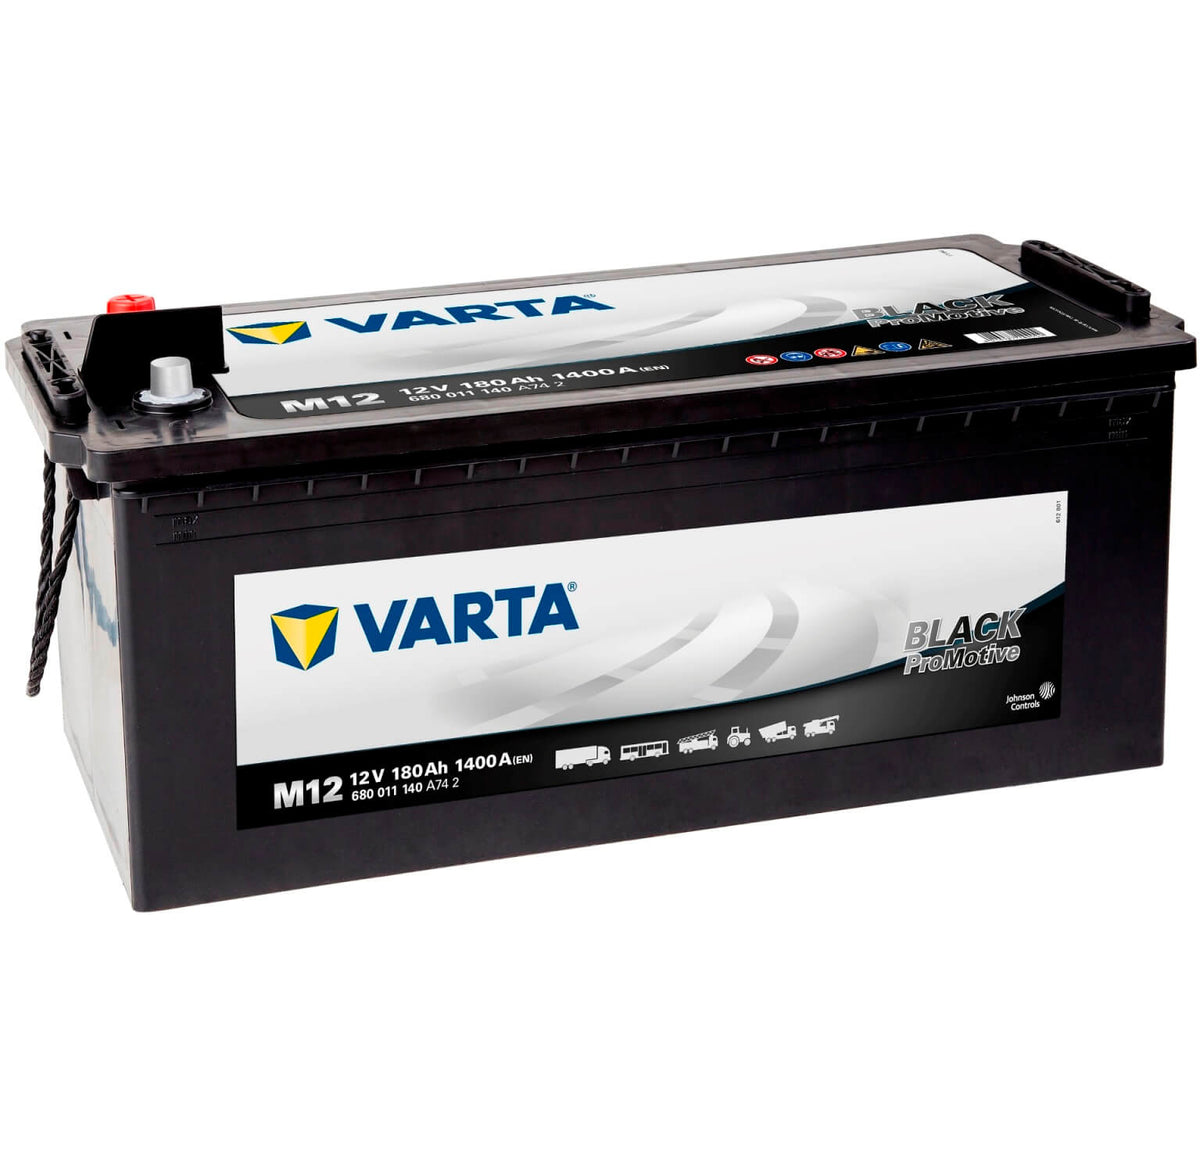 Batteriekasten aus Edelstahl - für 180 Ah Batterie, Batteriekästen, Nutzfahrzeugteile